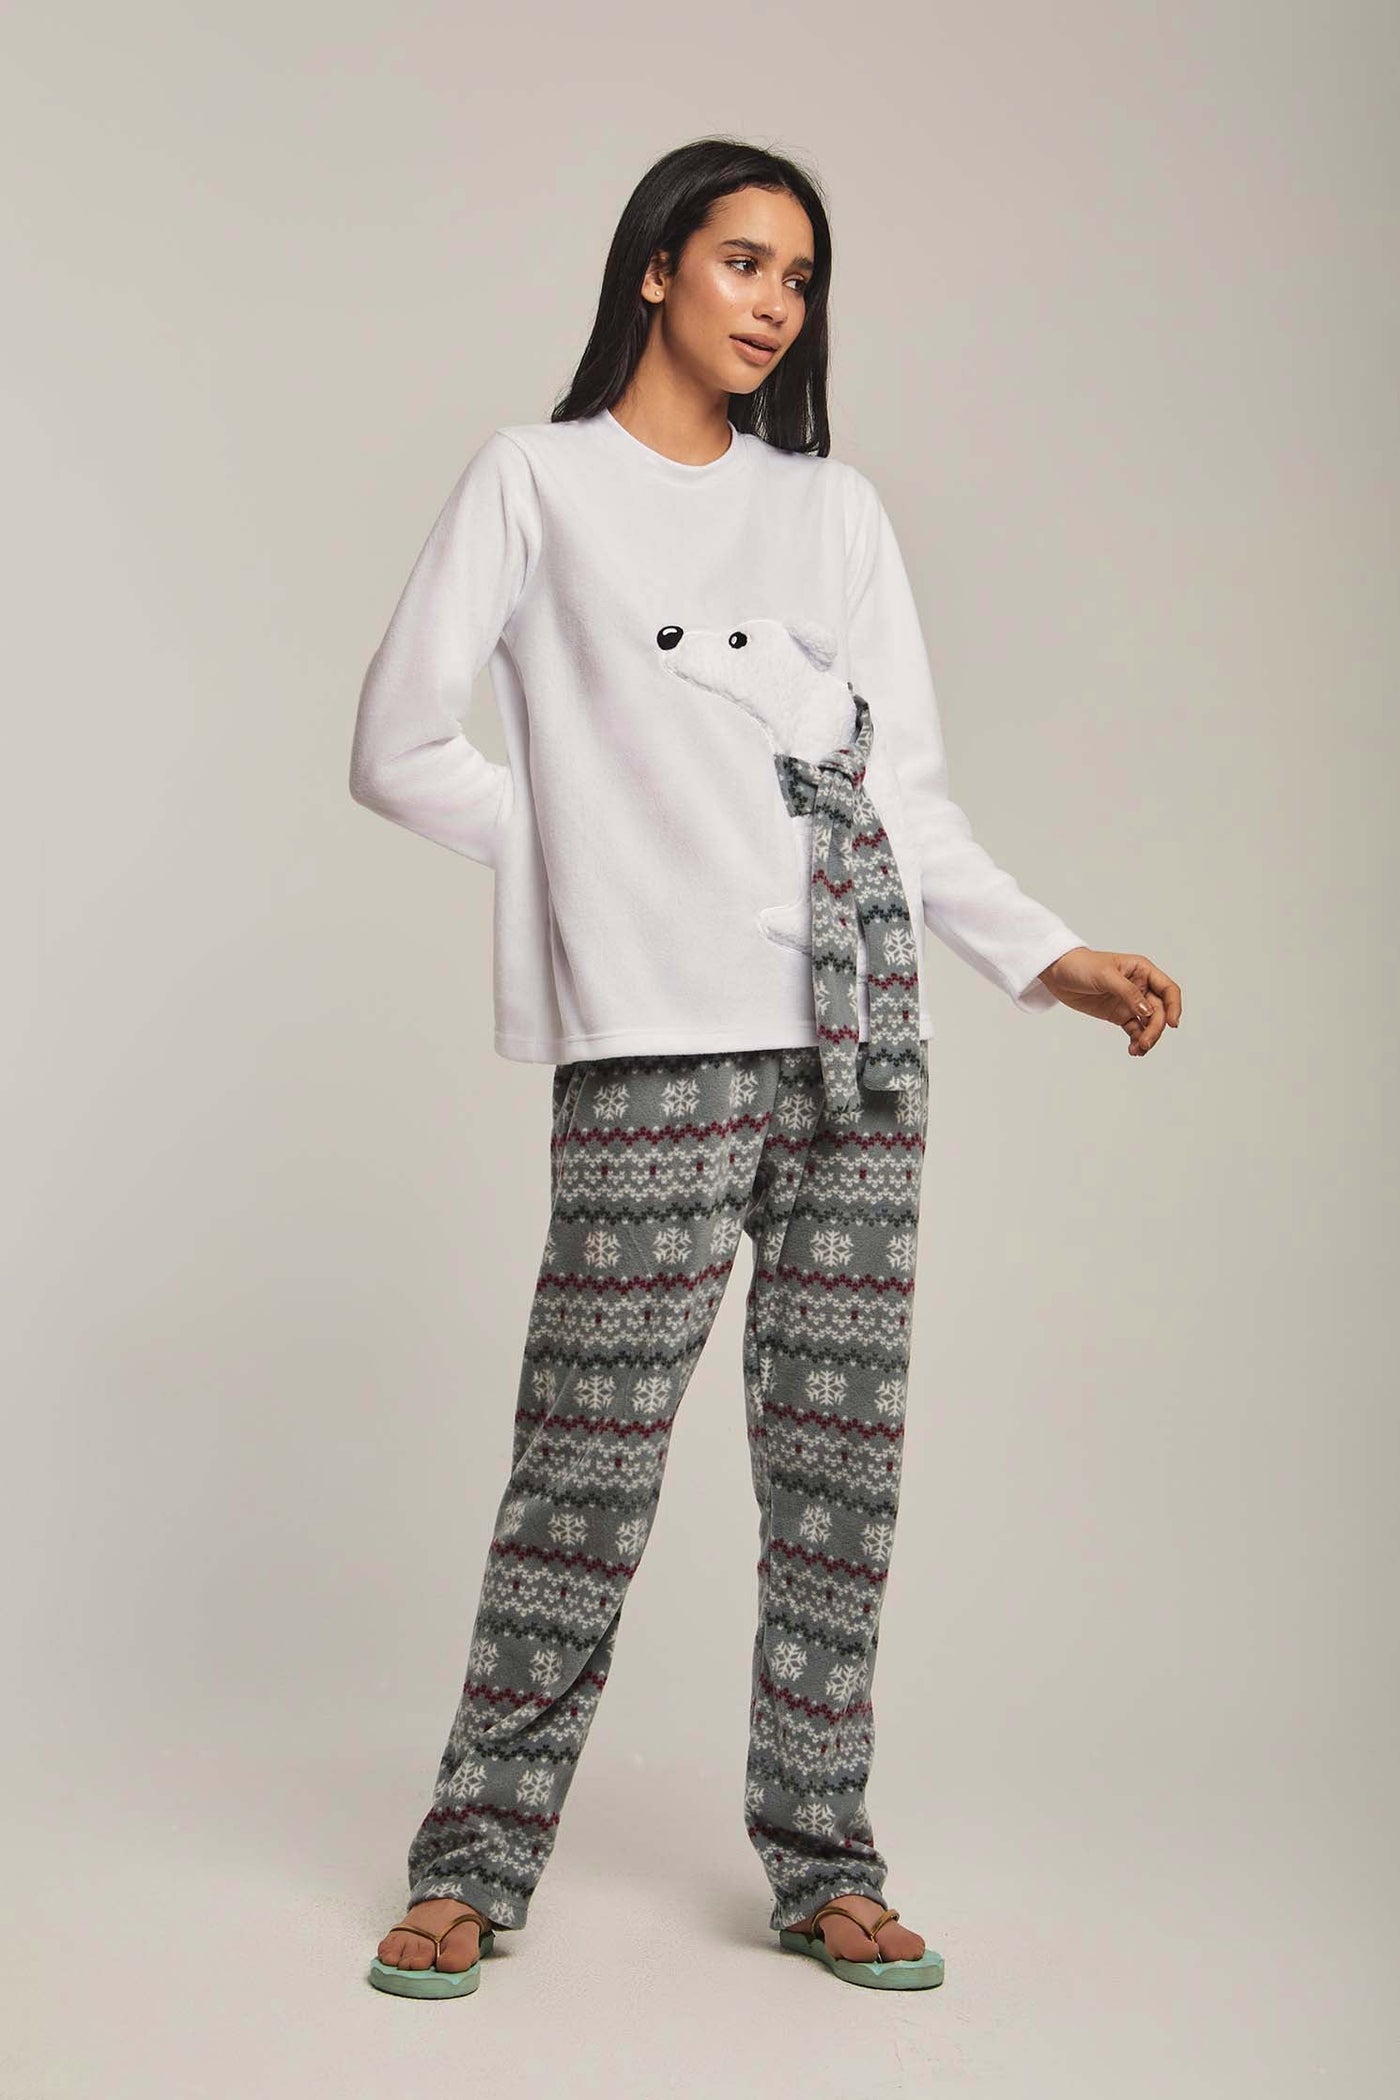 Pajamas - "Dog" - Christmas Pattern